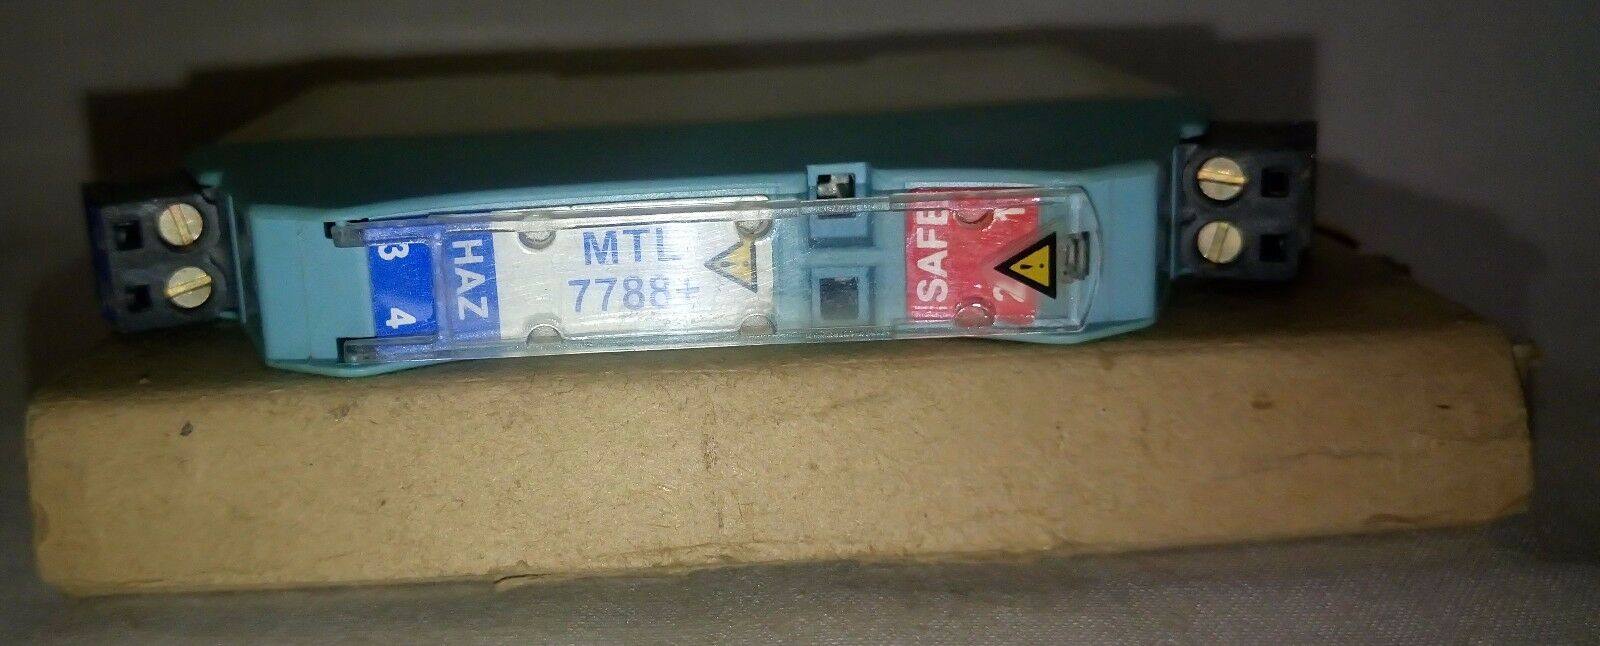 MTL 7788+ 分流-二极管 安全屏障 